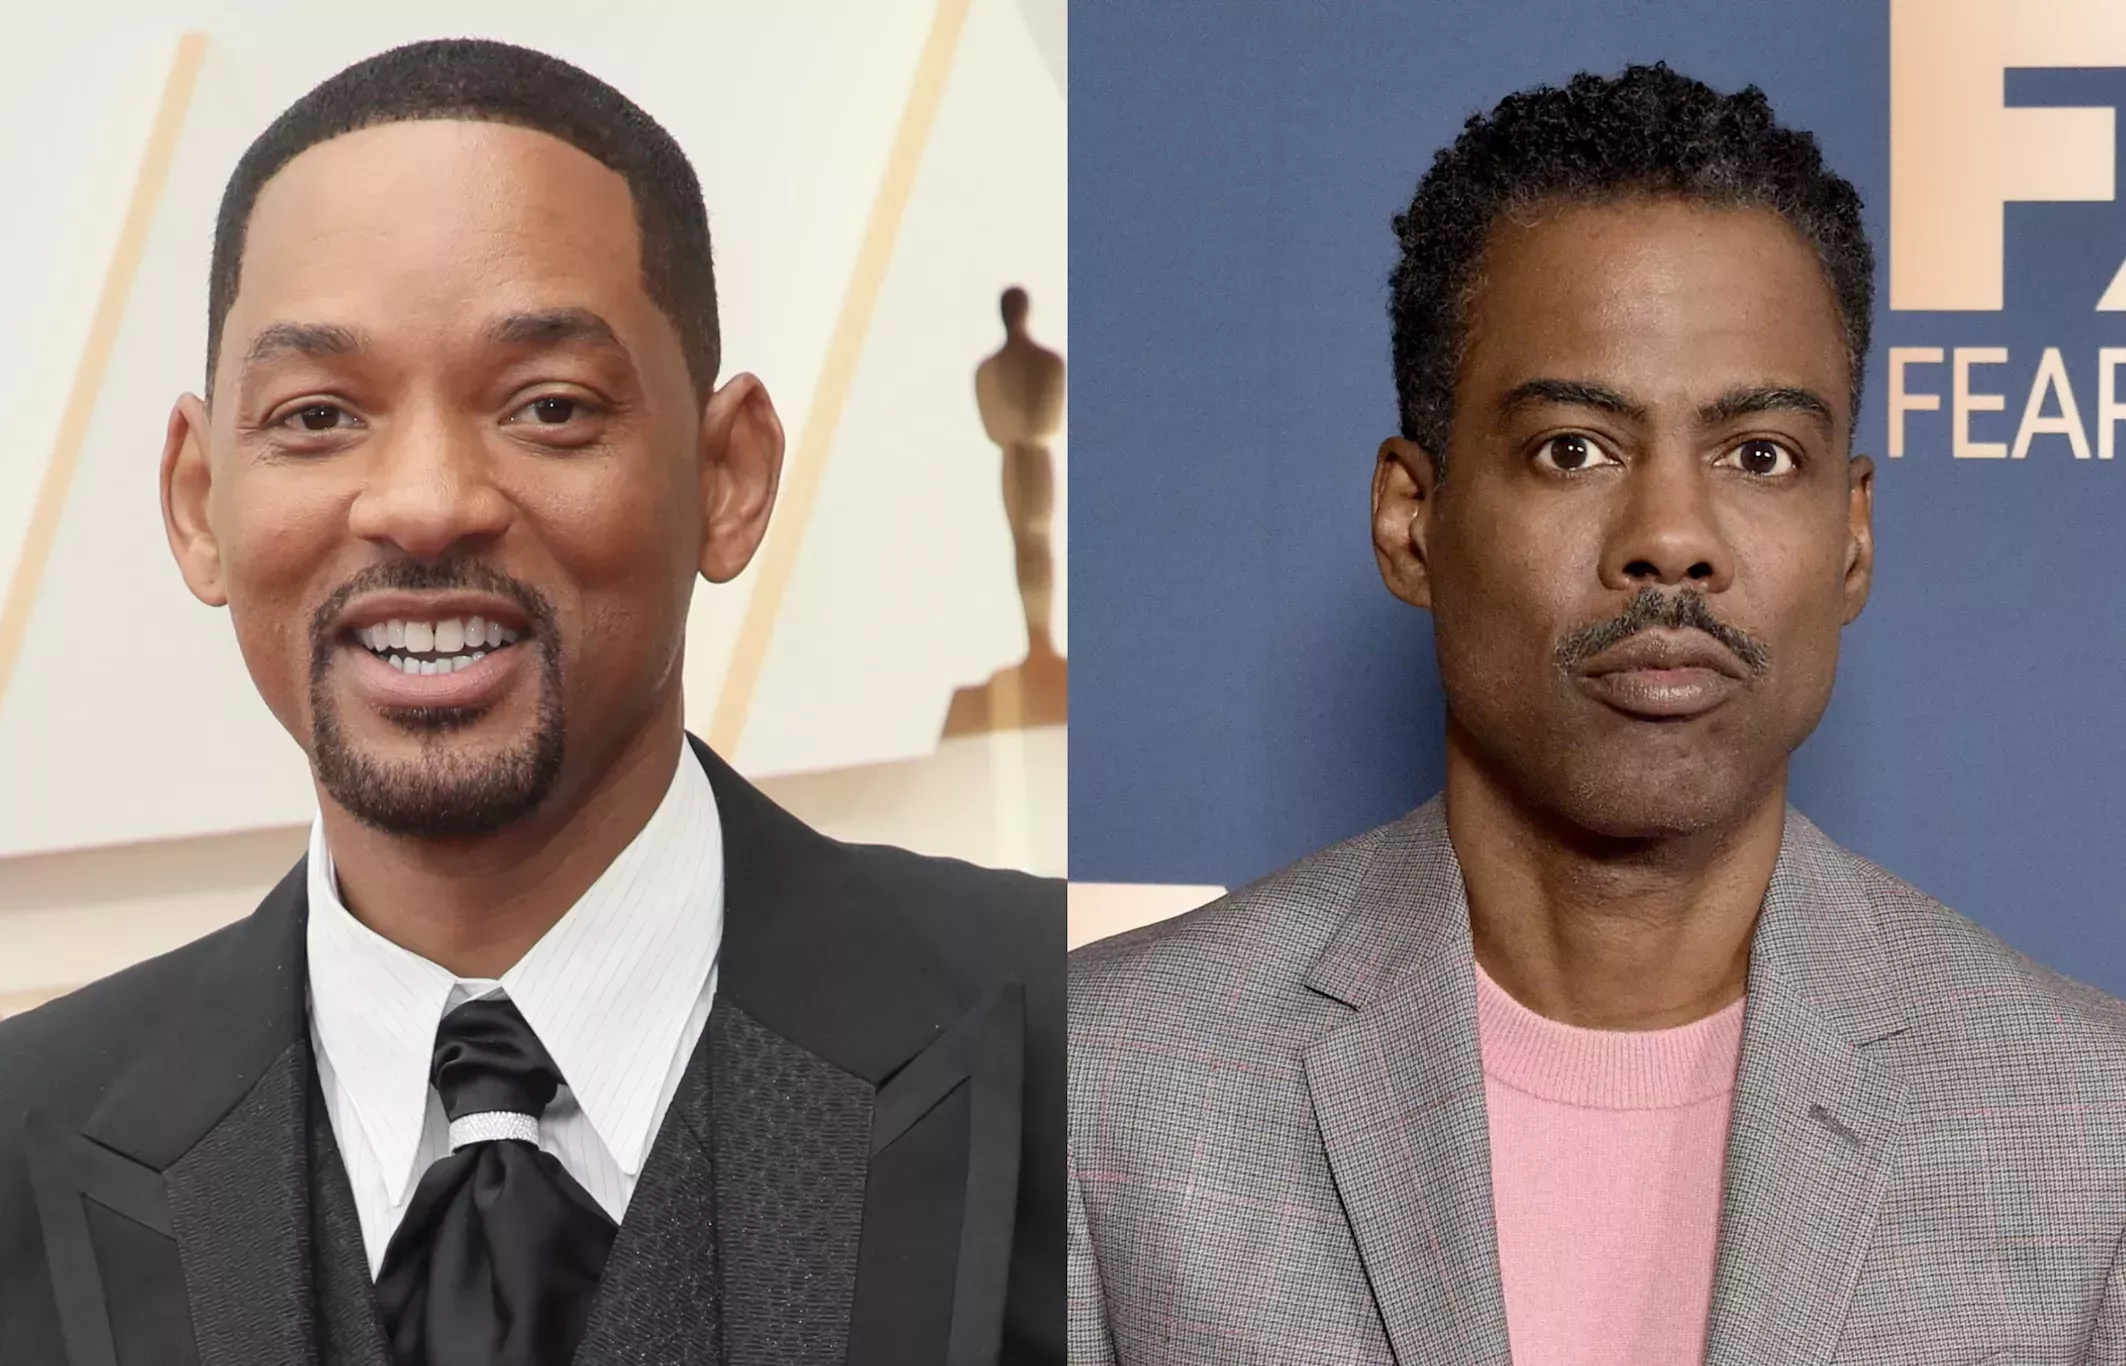 El productor de los Oscars alaba la disculpa pública de Will Smith a Chris Rock: 